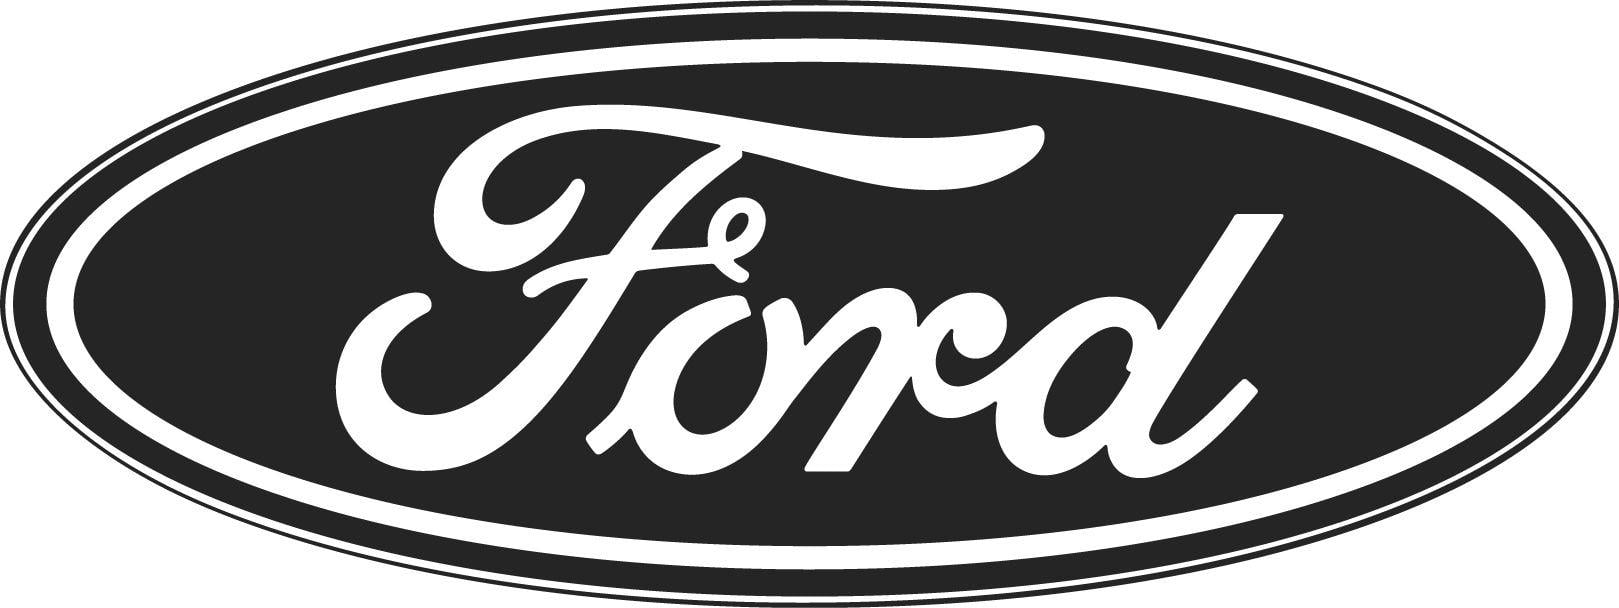 Ford Truck Logo - Ford Trucks For Sale in Valencia, CA | Valencia Auto Center